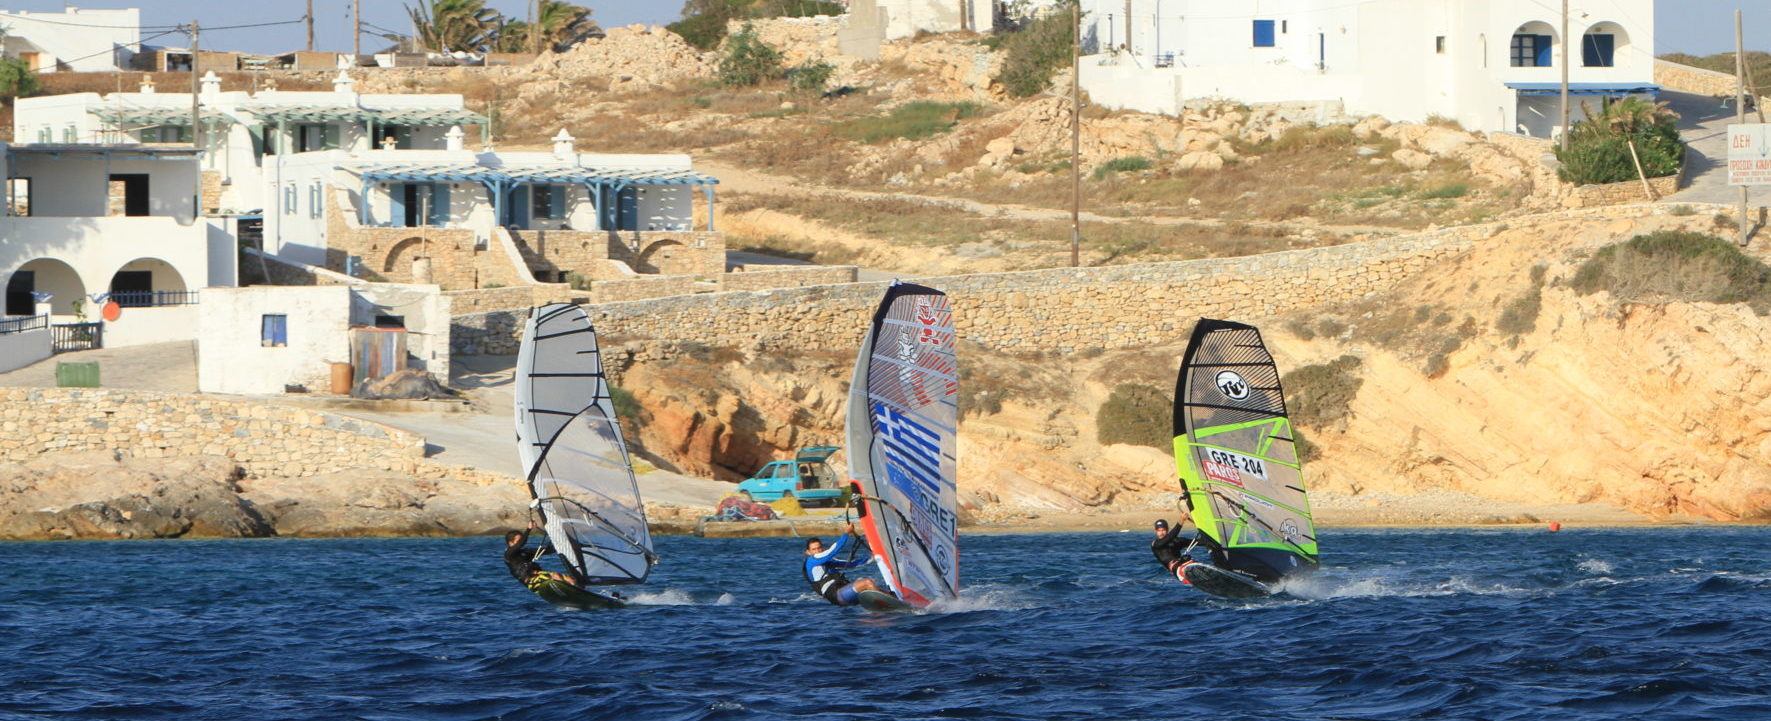 Paros windsurf new golden beach